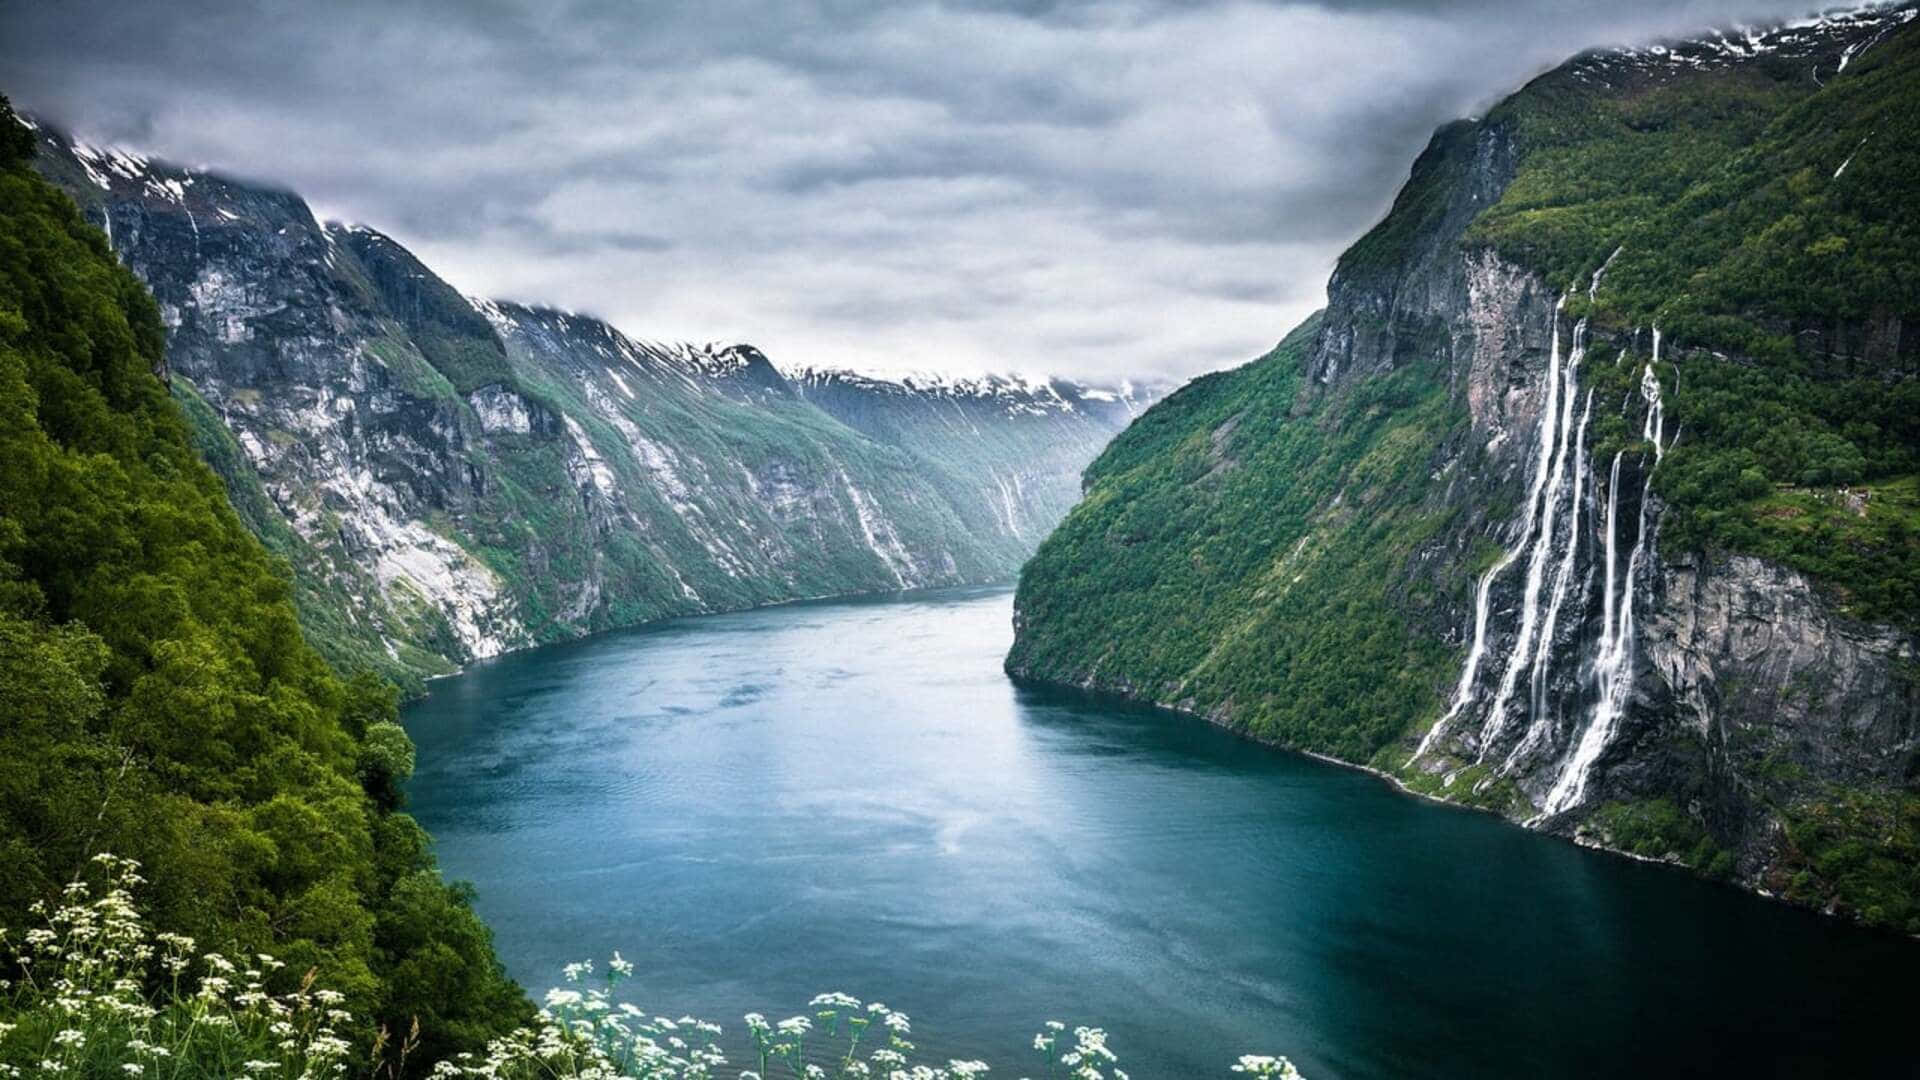 1080pnaturbakgrund Geirangerfjorden Norge.